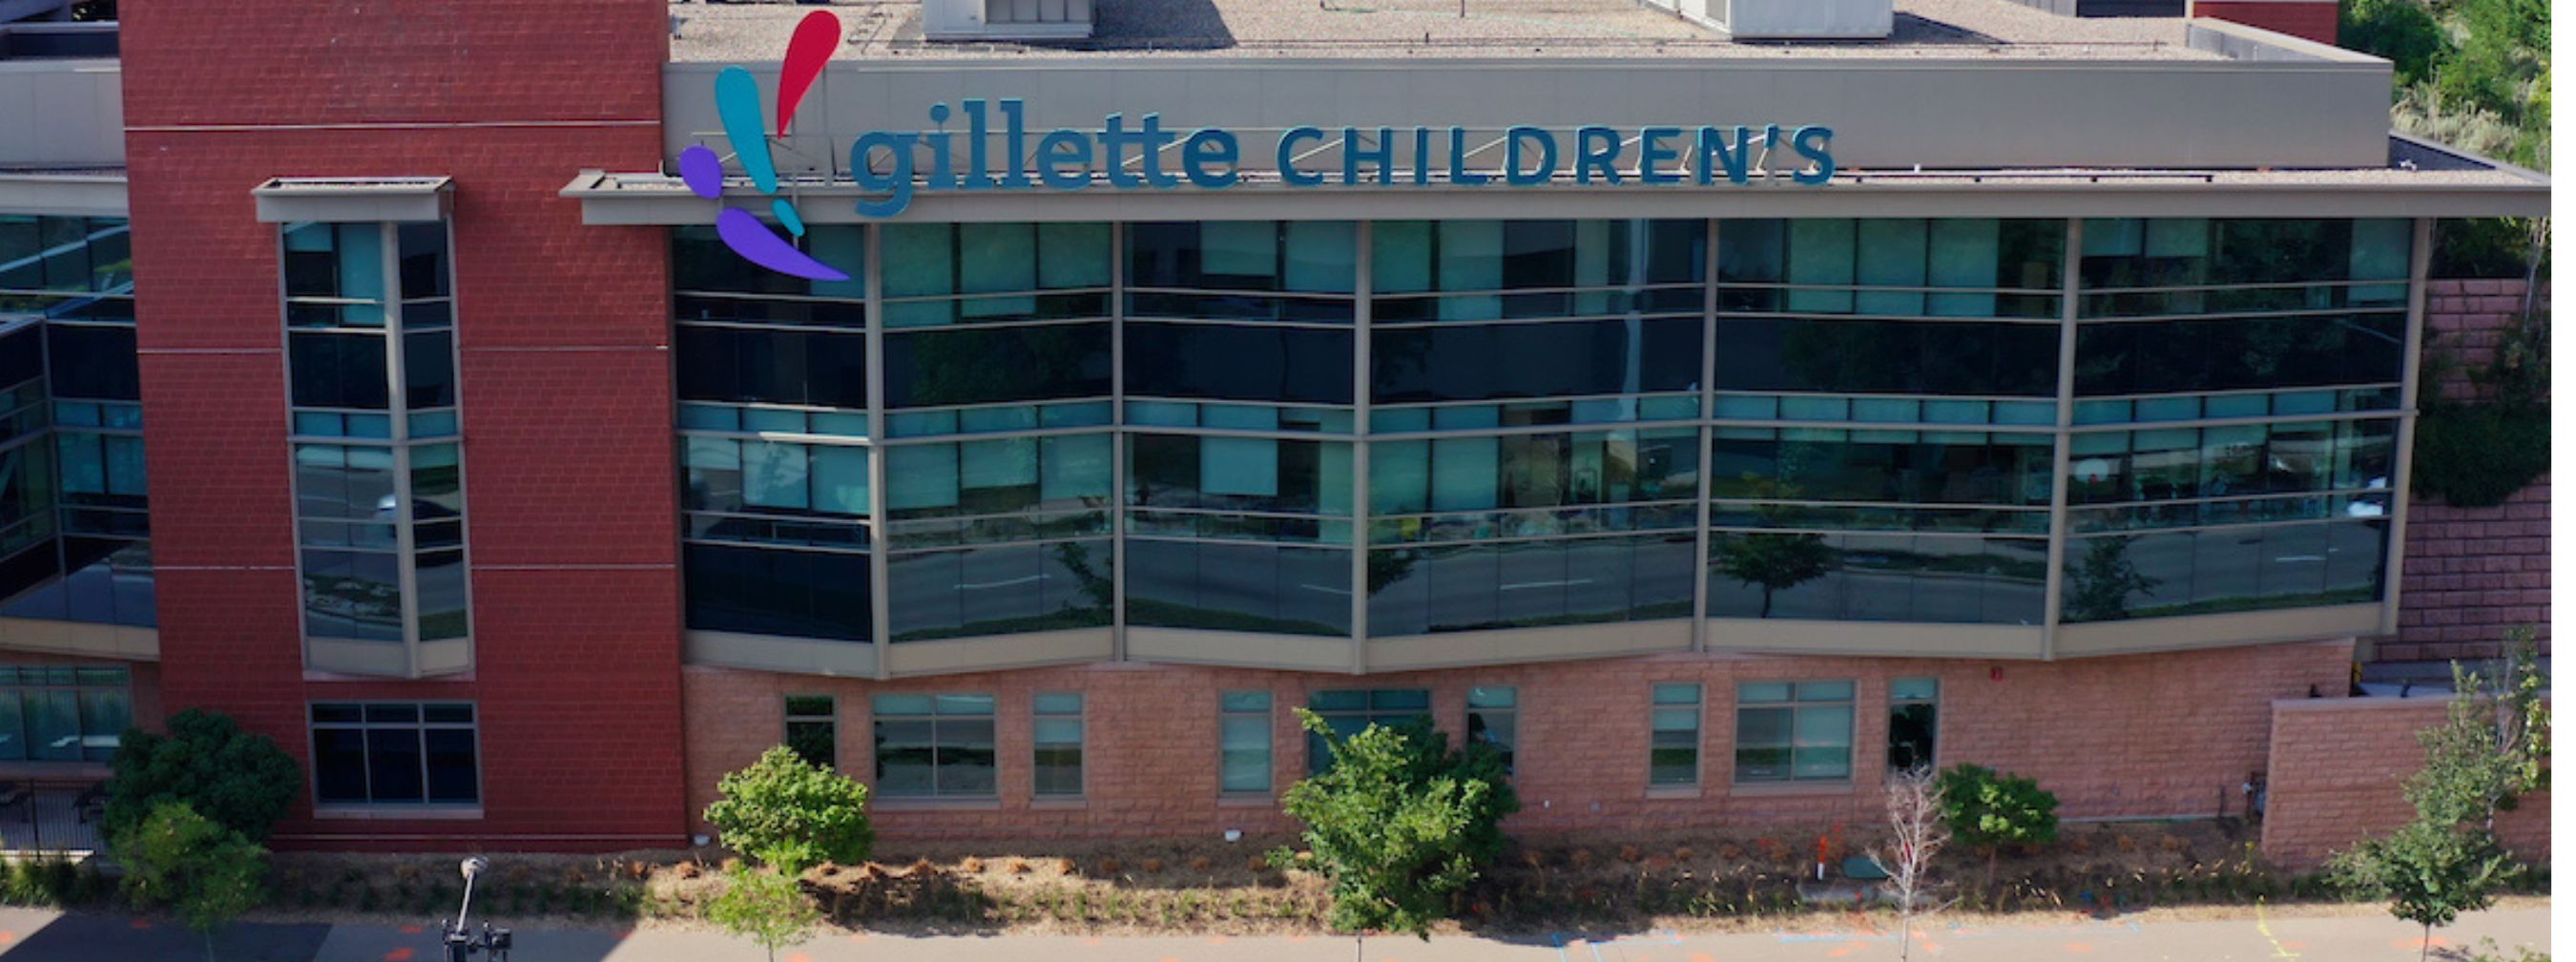 St. Paul Campus Gillette Children's building exterior